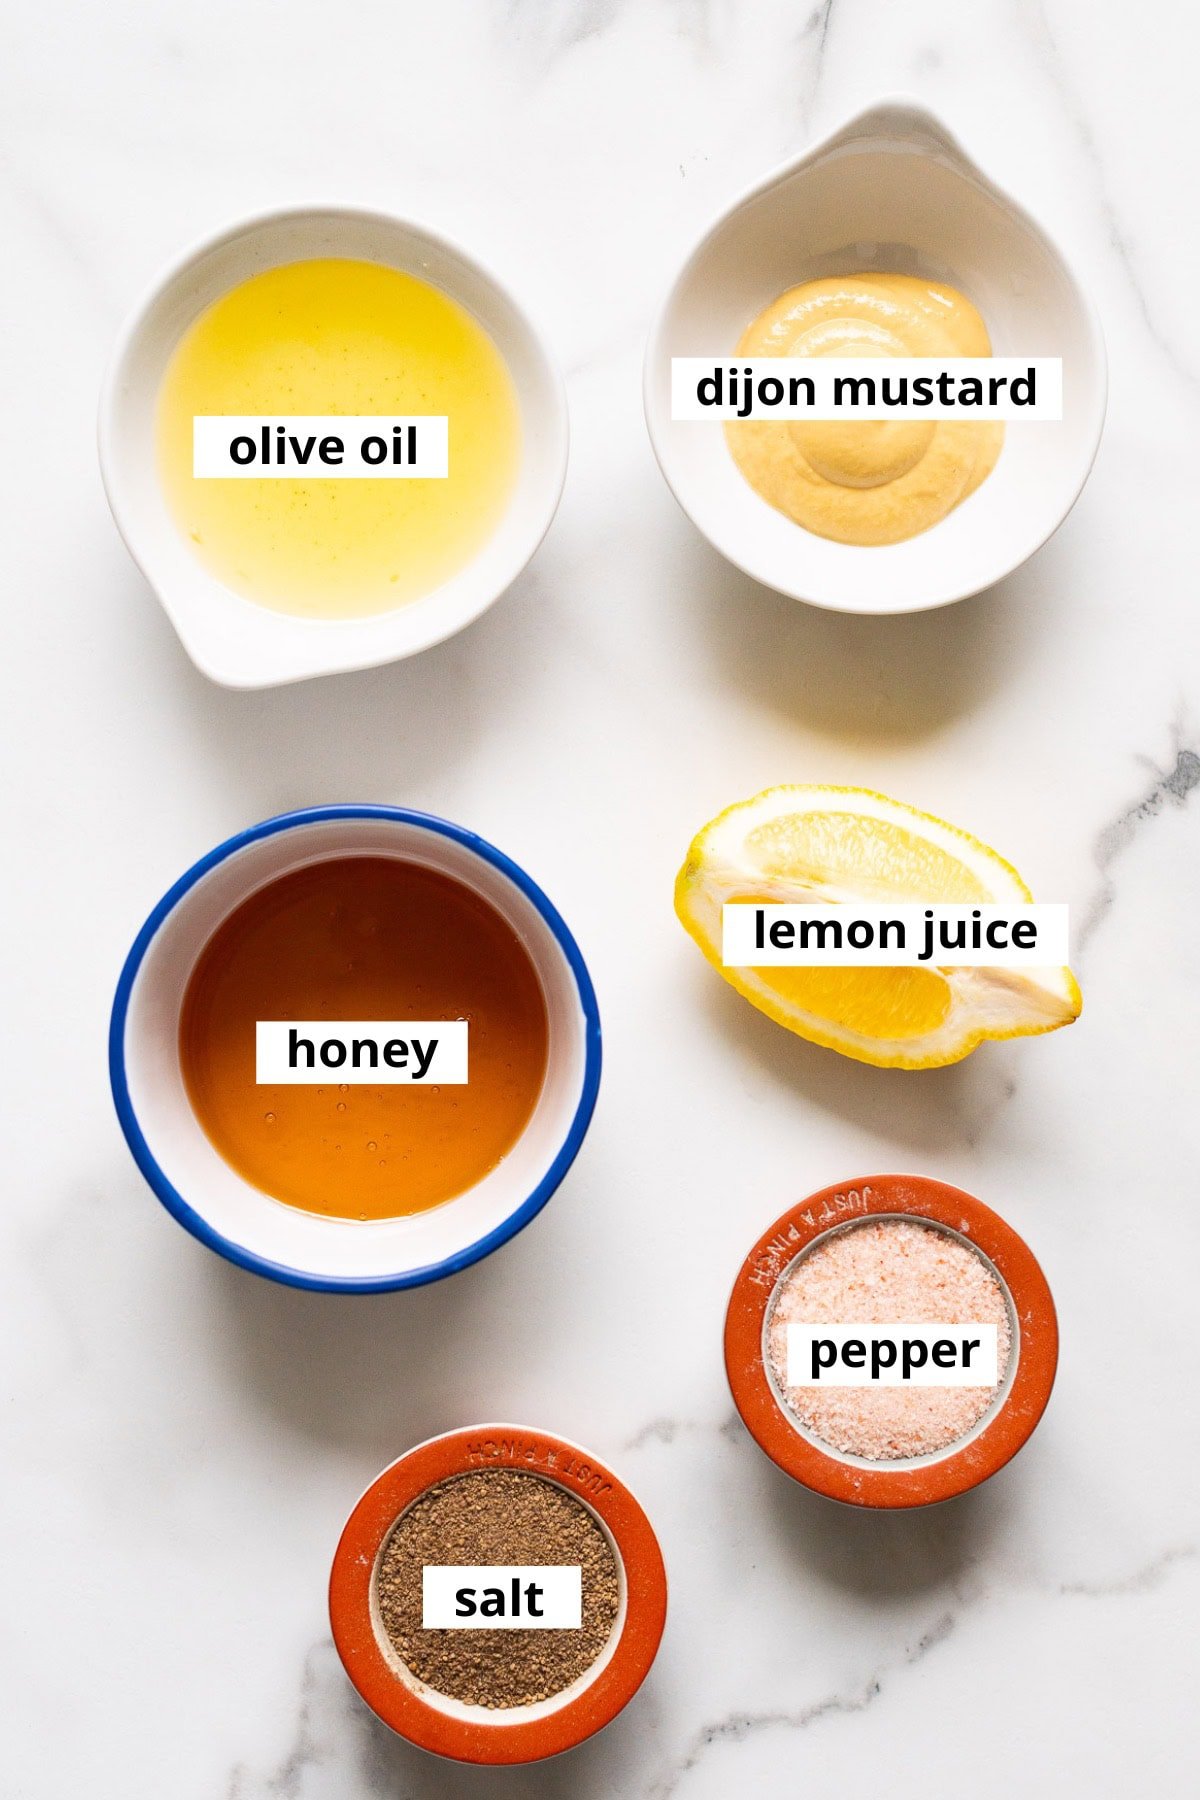 DIjon mustard, lemon juice, honey, olive oil, salt and pepper.